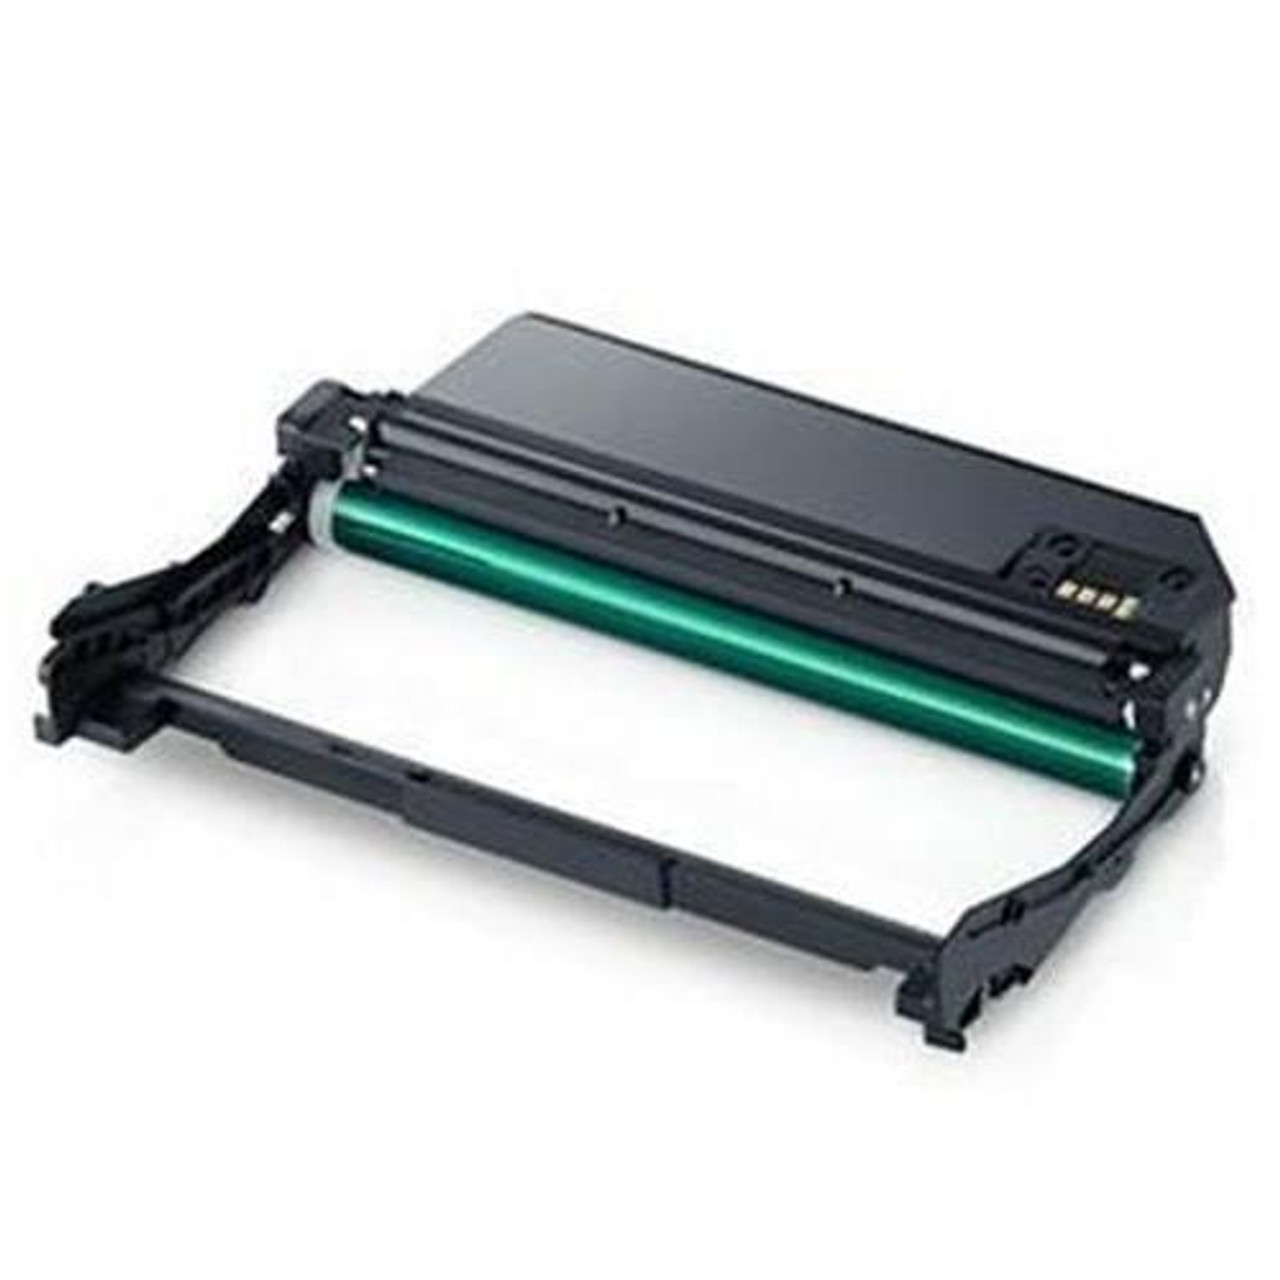 MLT-D111D/ELS Samsung Printer Ink Cart Toner